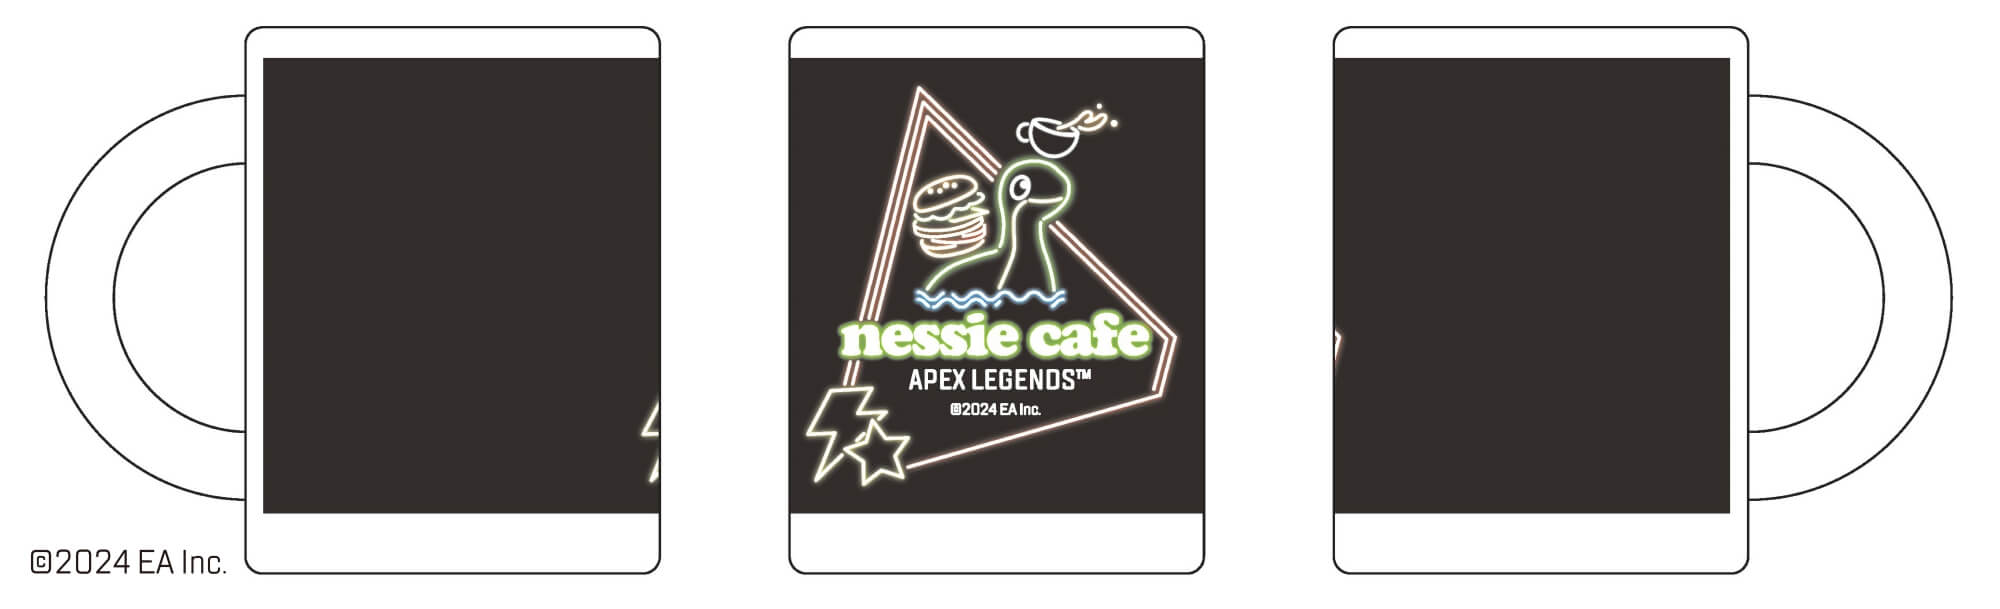 『Apex Legends』コラボの「ネッシーカフェ」が今年も池袋で開催。ネッシーやレジェンドたちをイメージしたメニューが登場_003